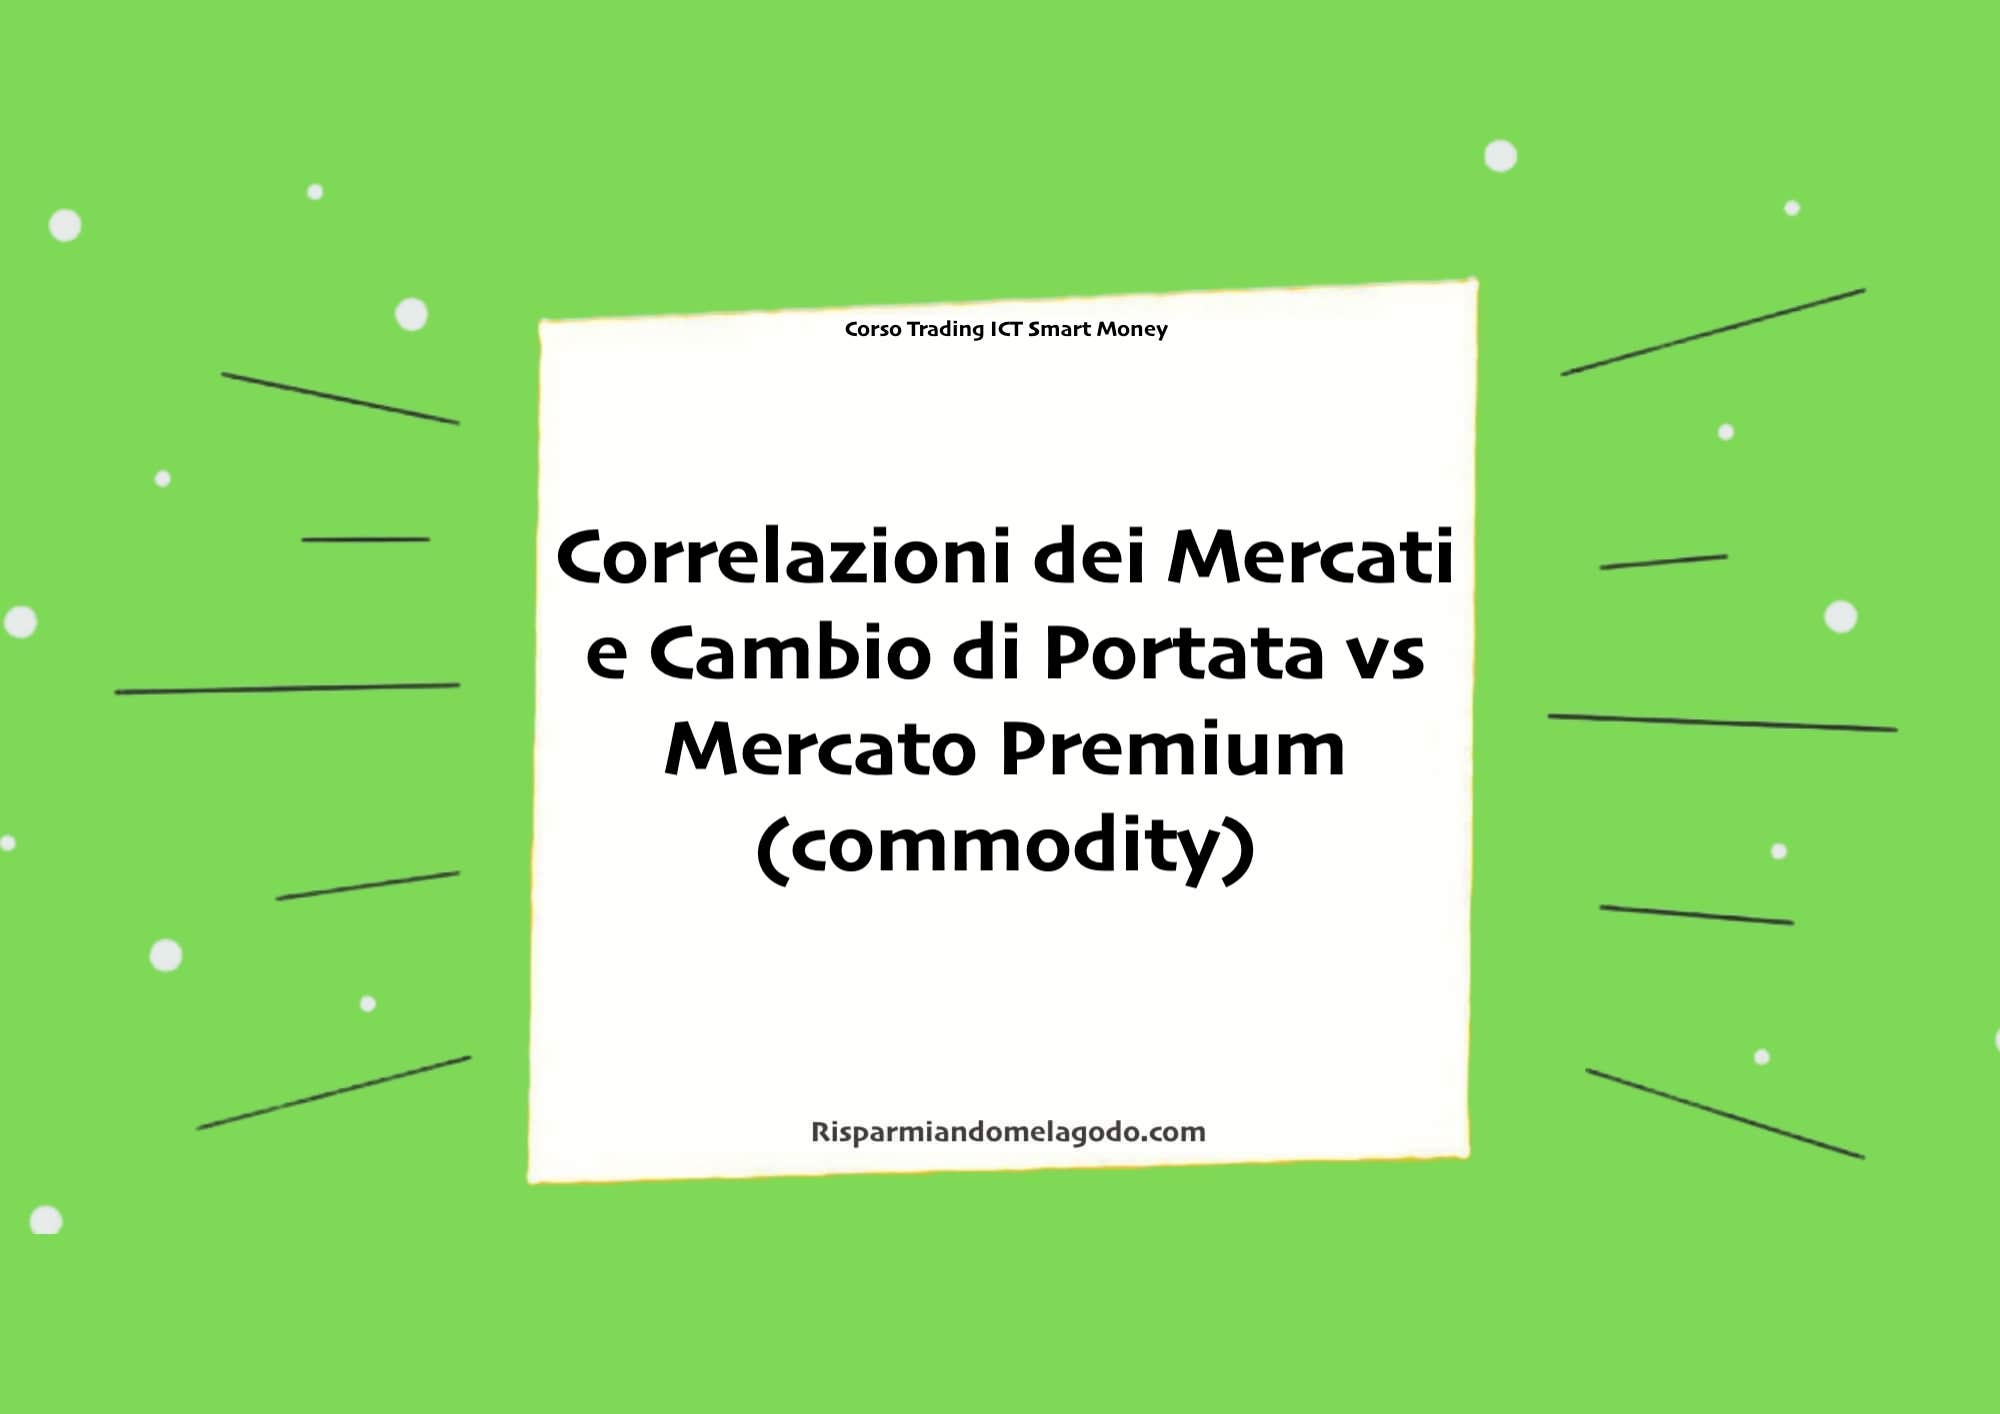 Correlazioni dei Mercati e Cambio di Portata vs Mercato Premium (commodity)